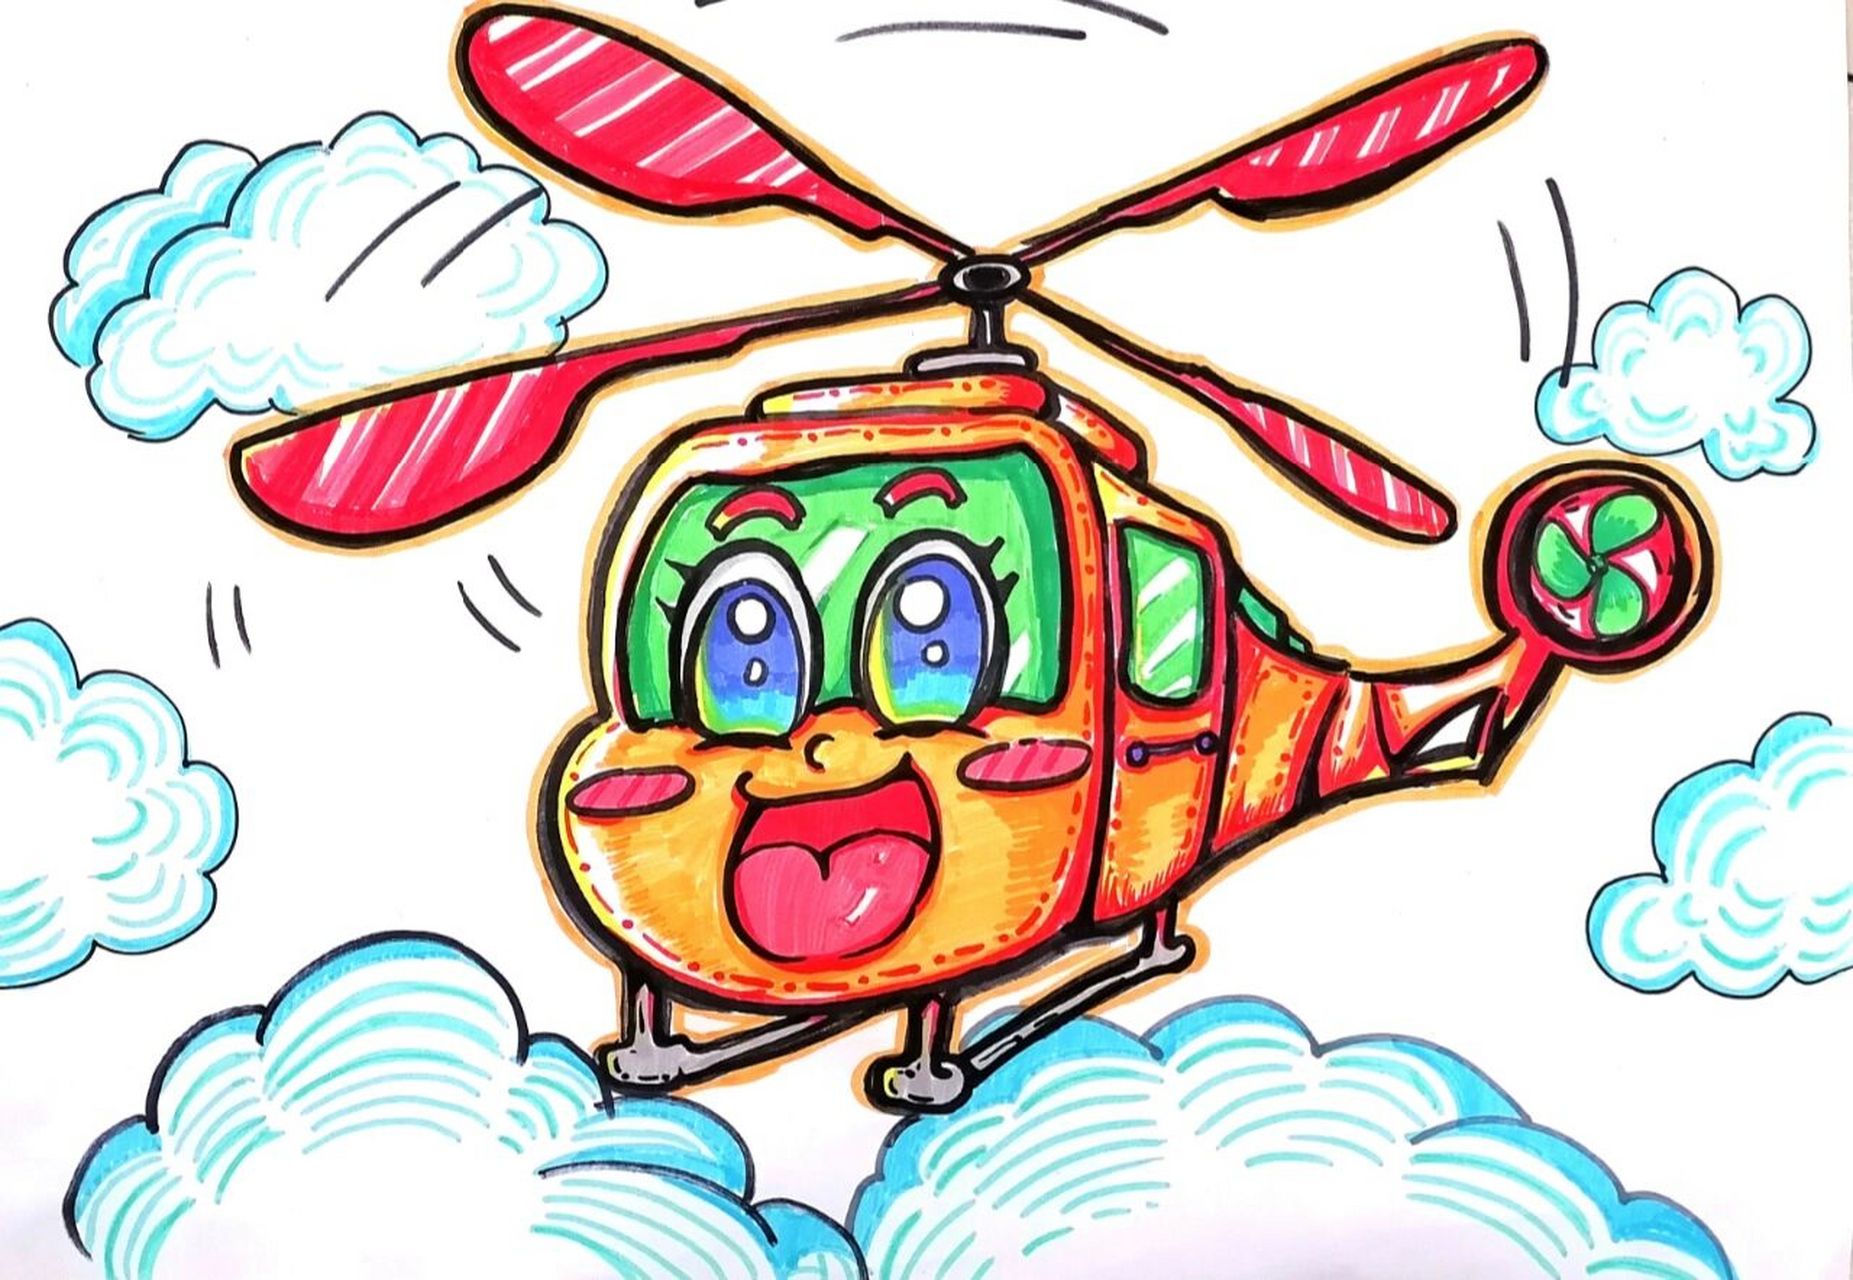 技能高考儿童画 飞机    打印纸,西瓜太郎水彩笔